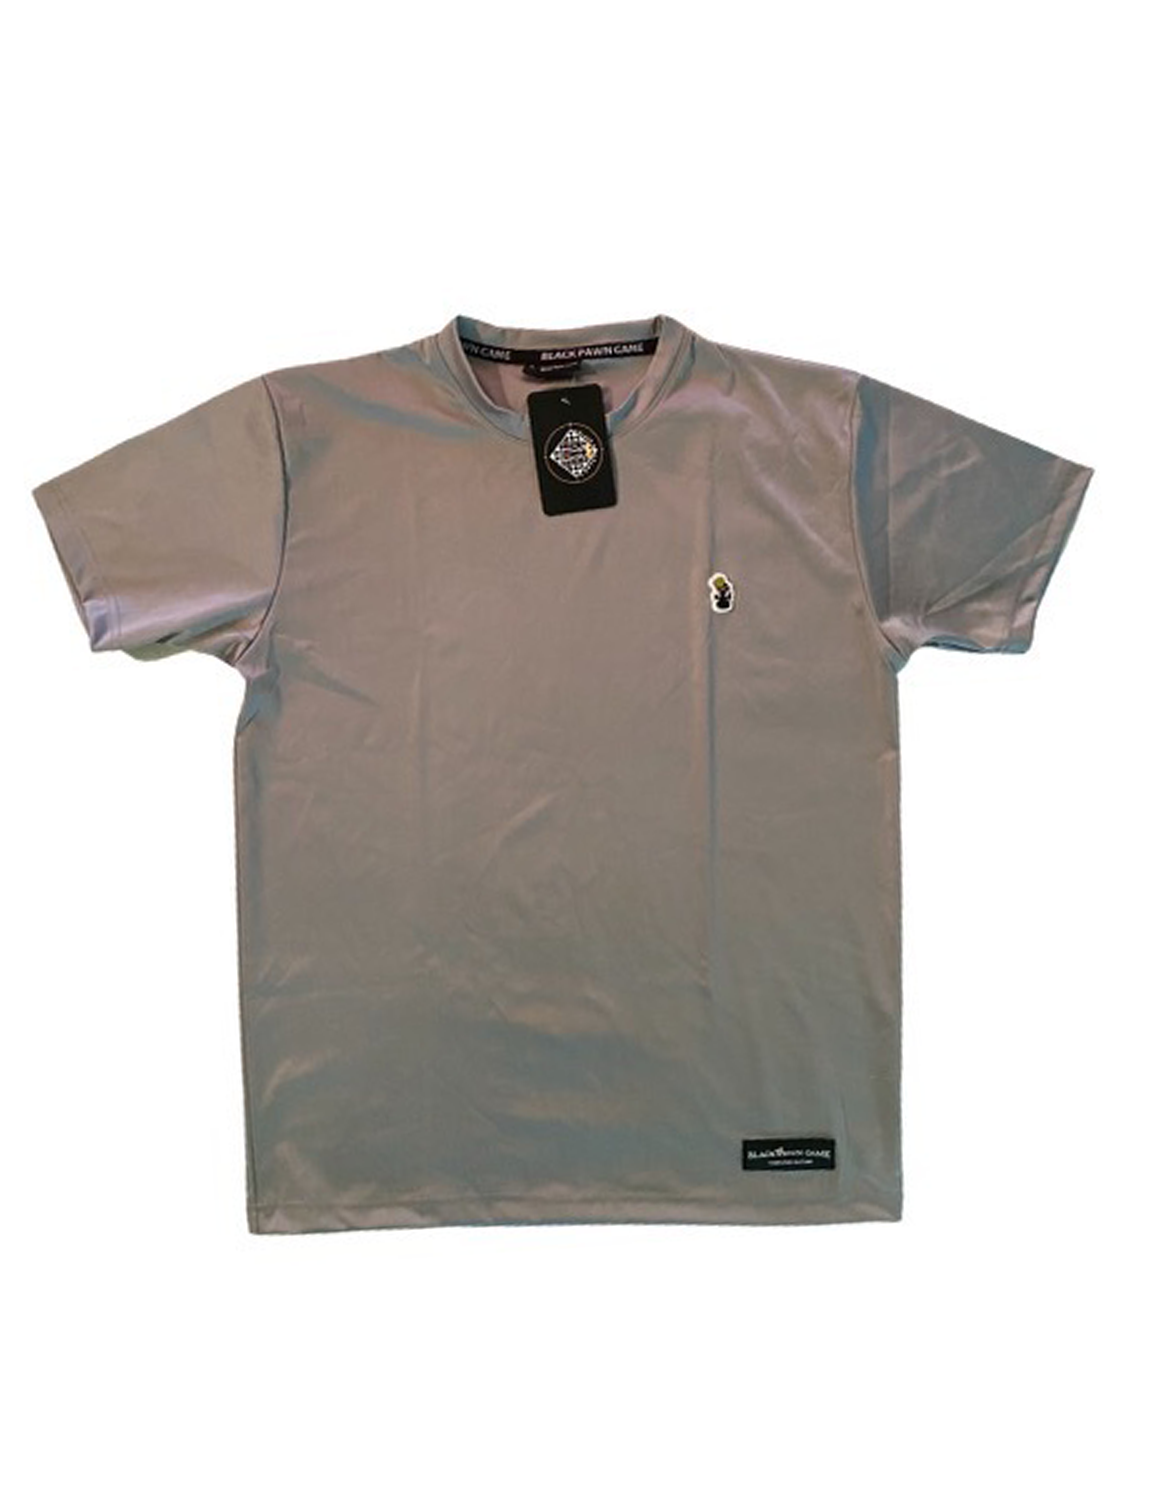 BPG Pawn Grey Shirt (medium)